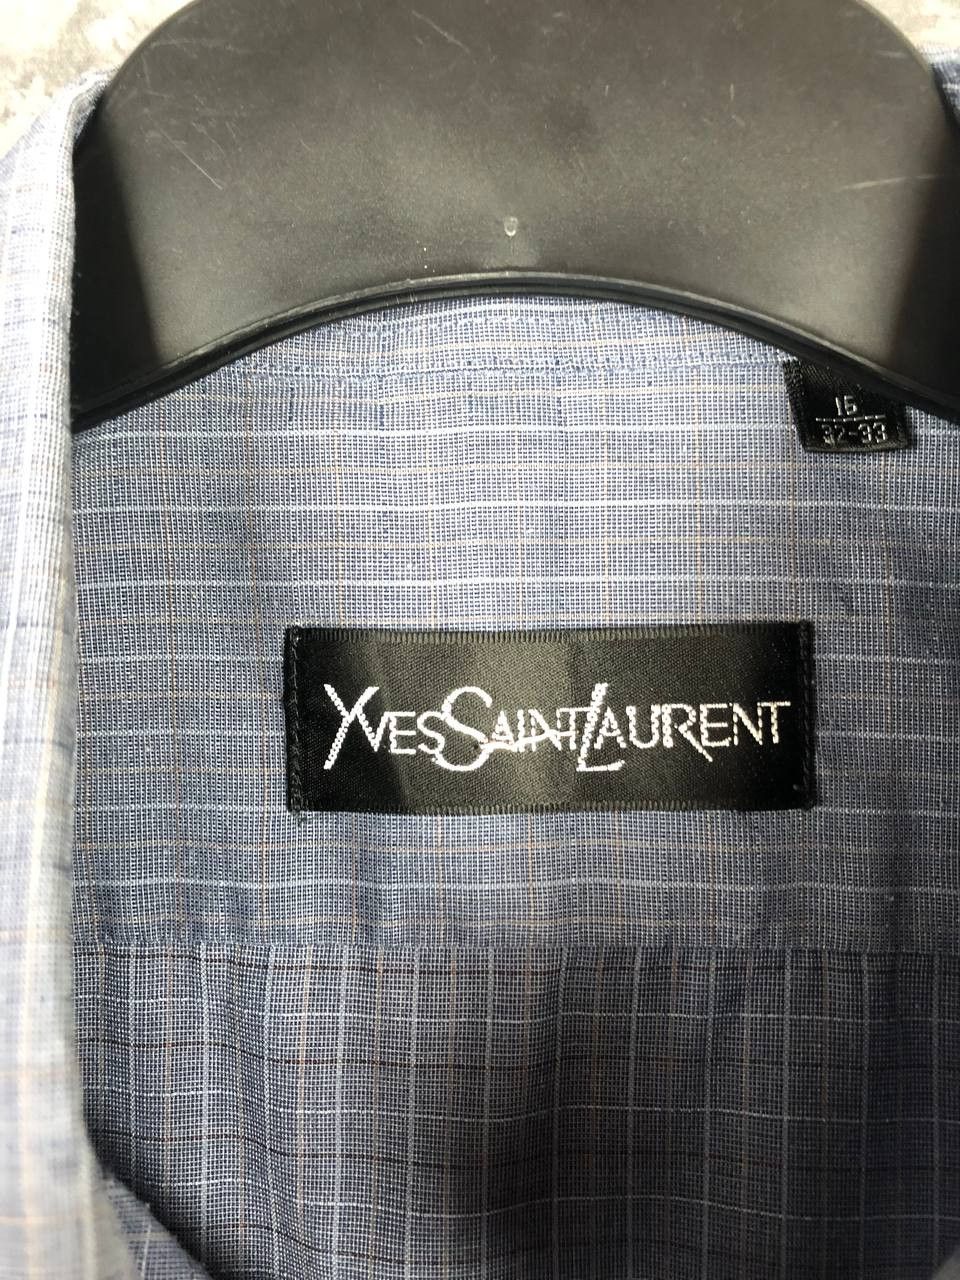 Vintage Yves Saint Laurent shirt button ups luxury vintage Size US S / EU 44-46 / 1 - 5 Thumbnail